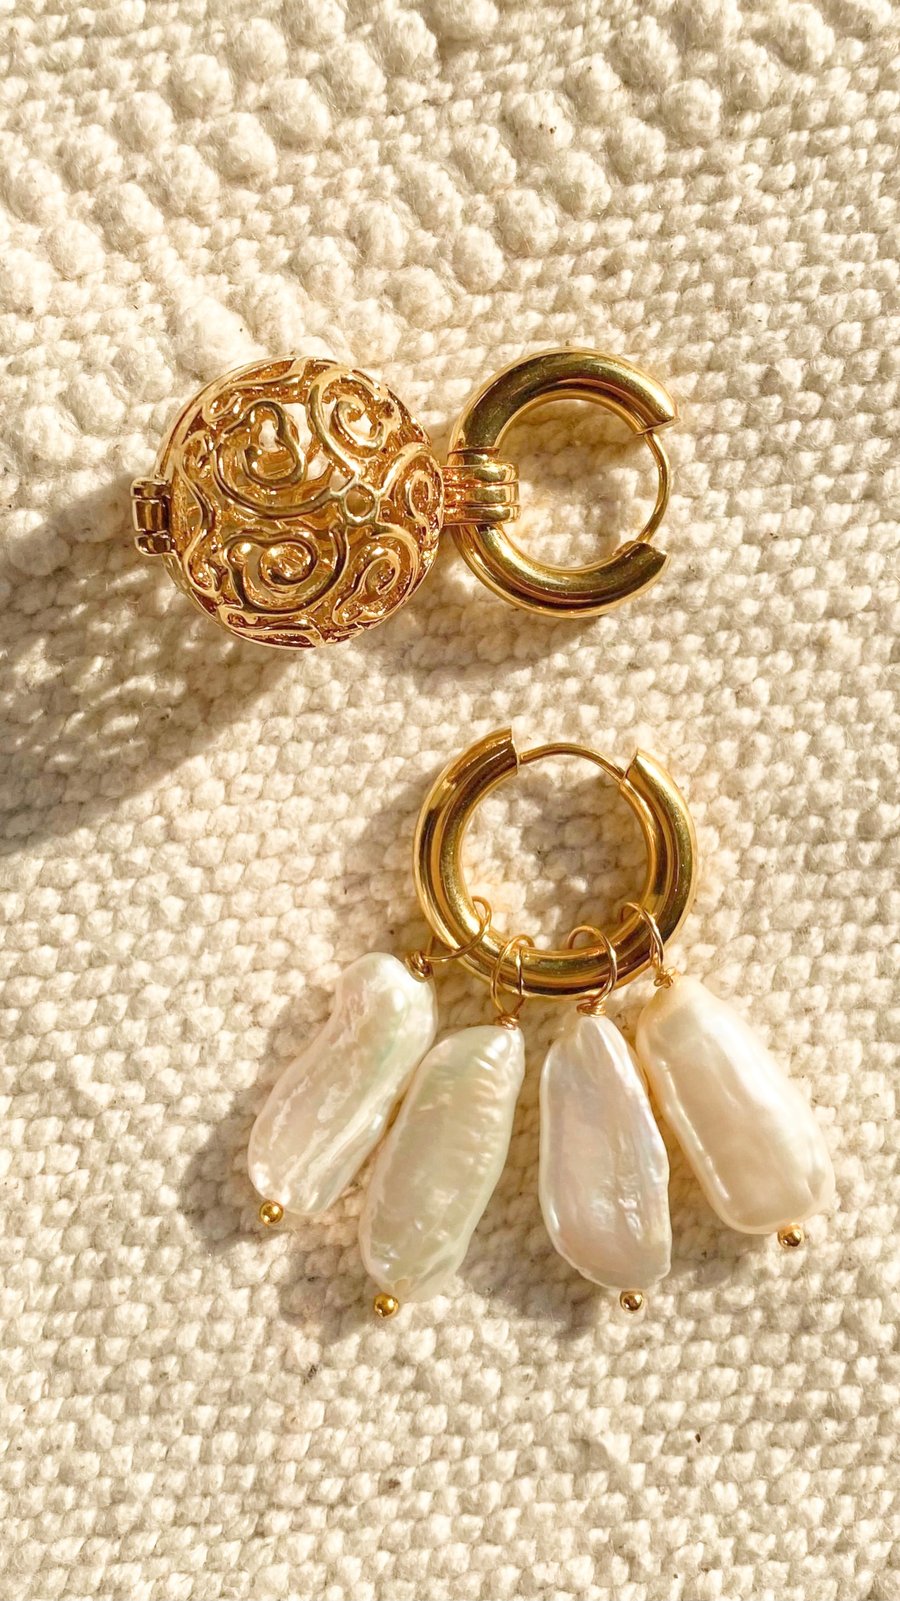 Image of Bali earrings